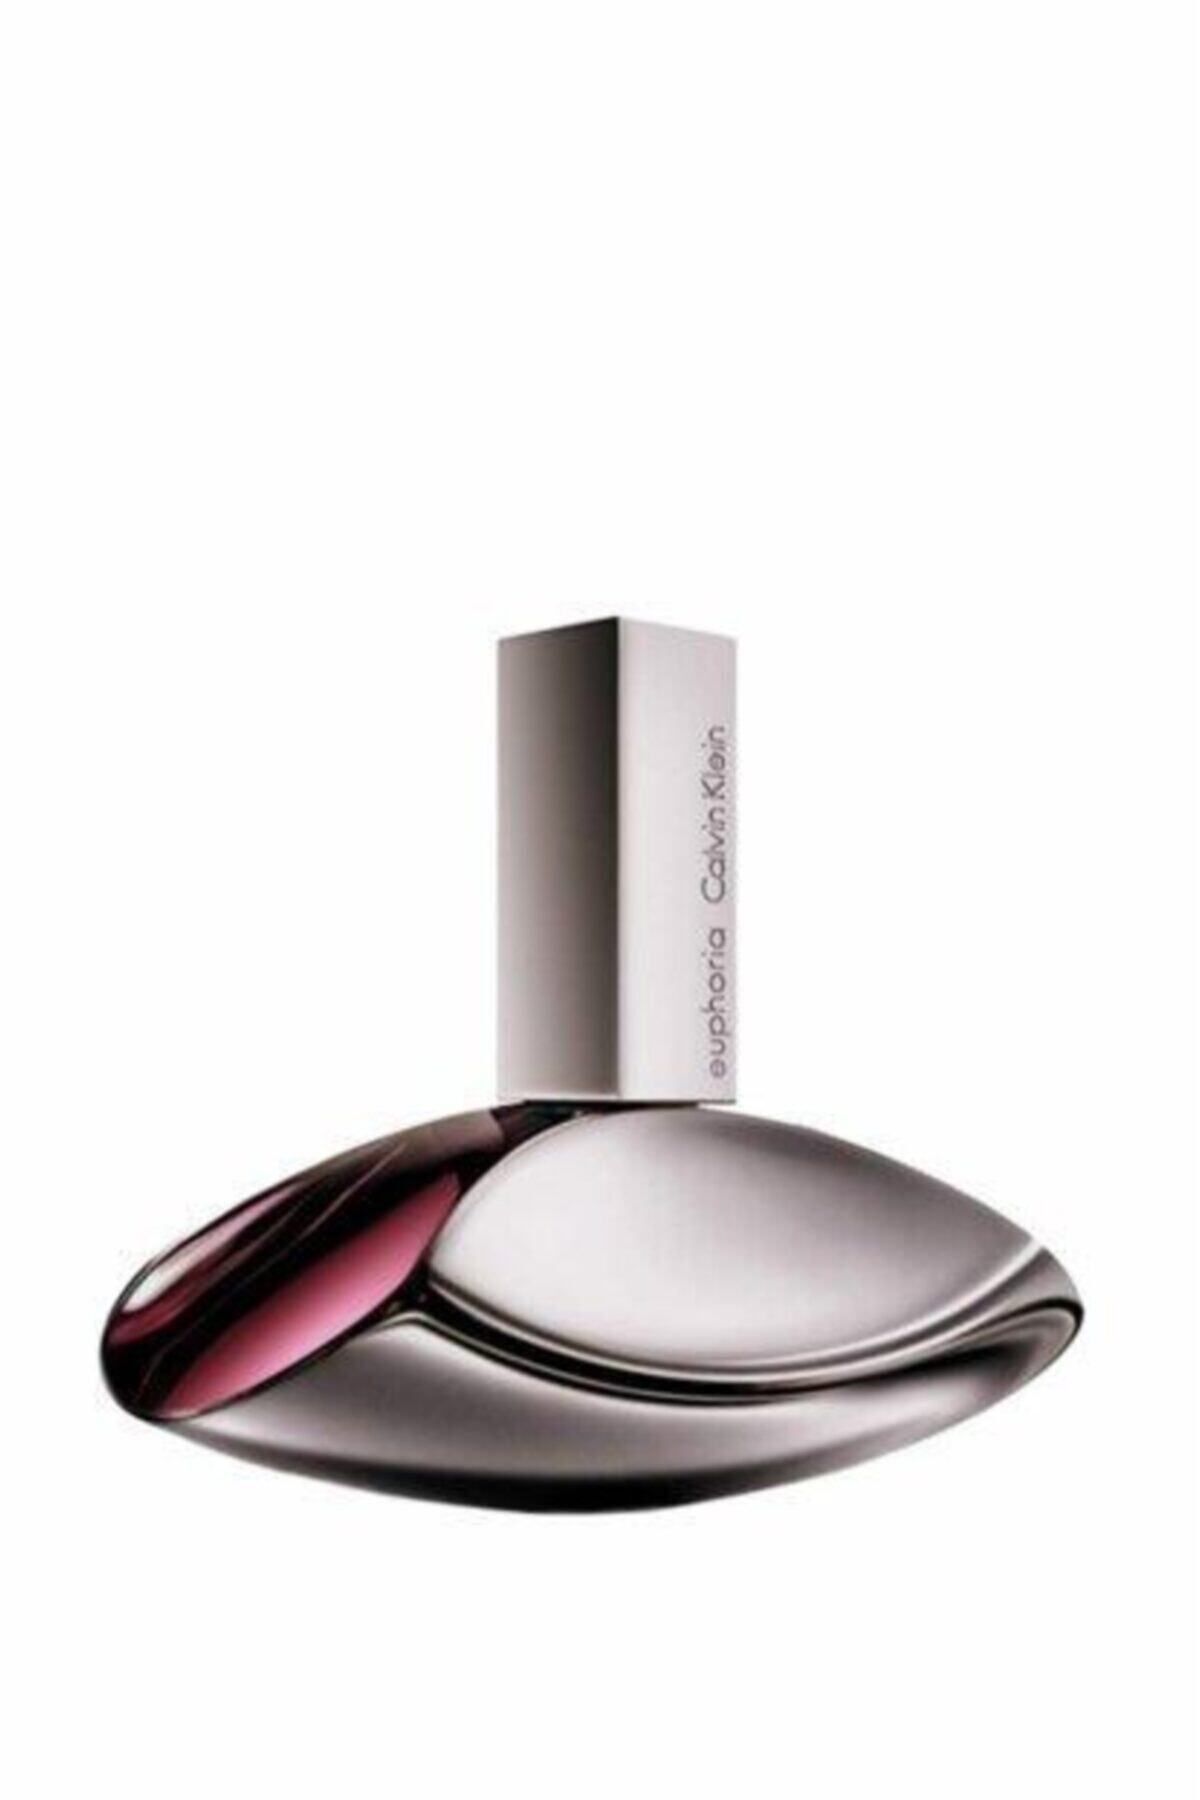 Calvin Klein Euphoria Edp 100 ml Kadın Parfüm 088300162505